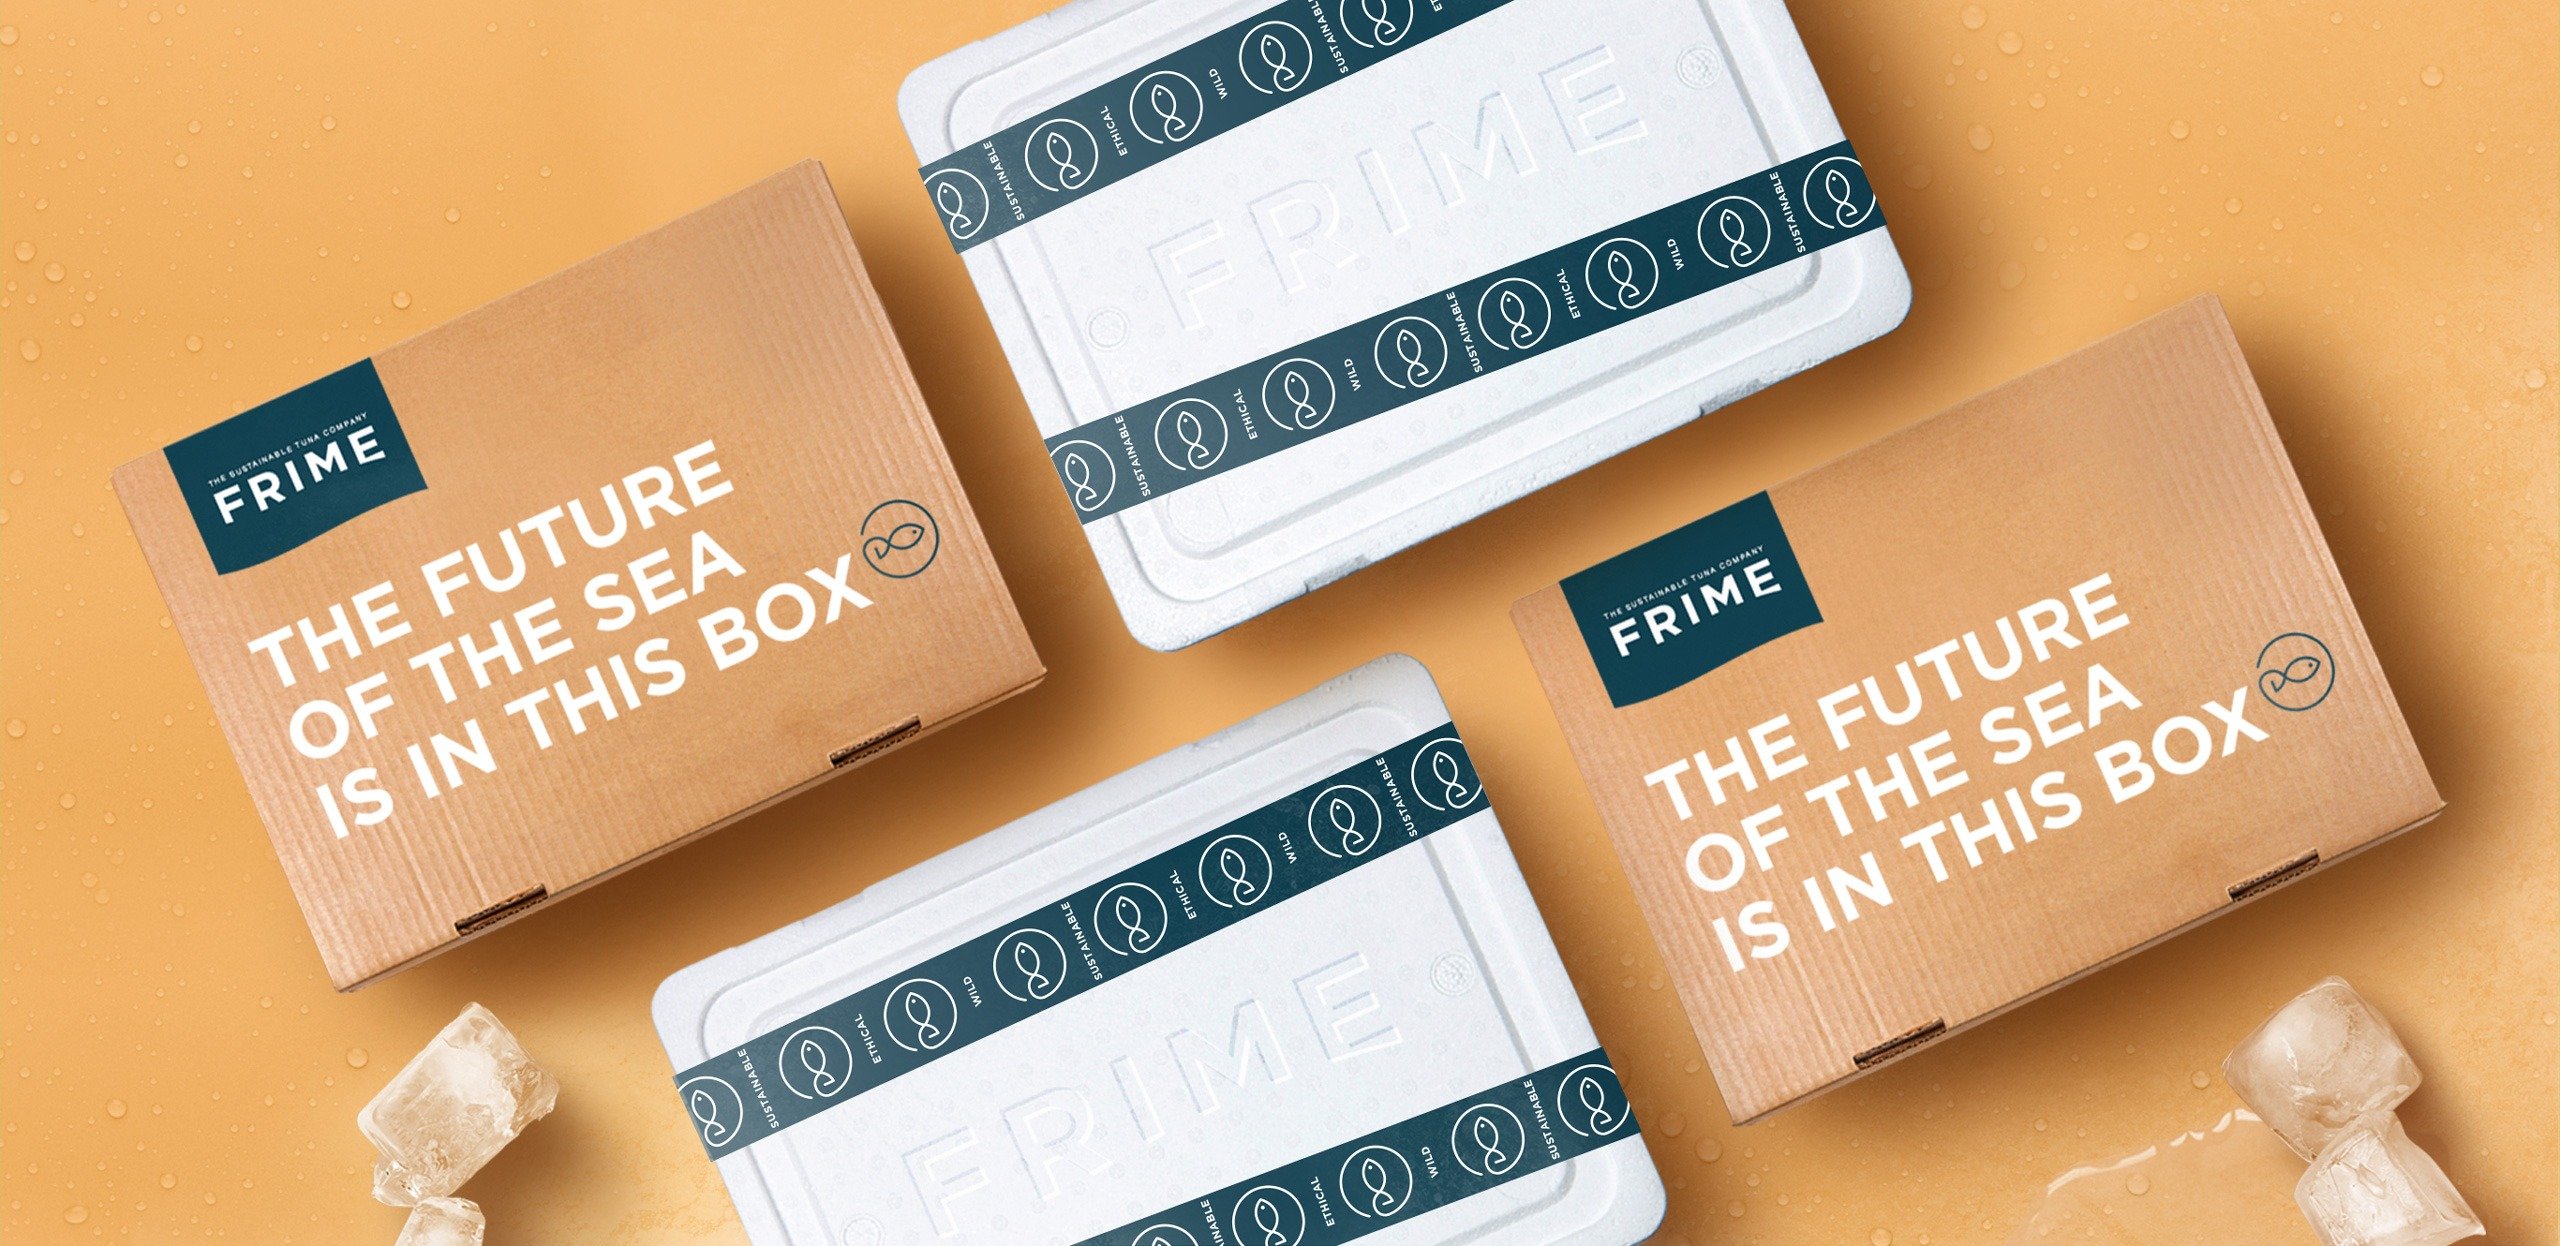 Frime-02-cajas-2